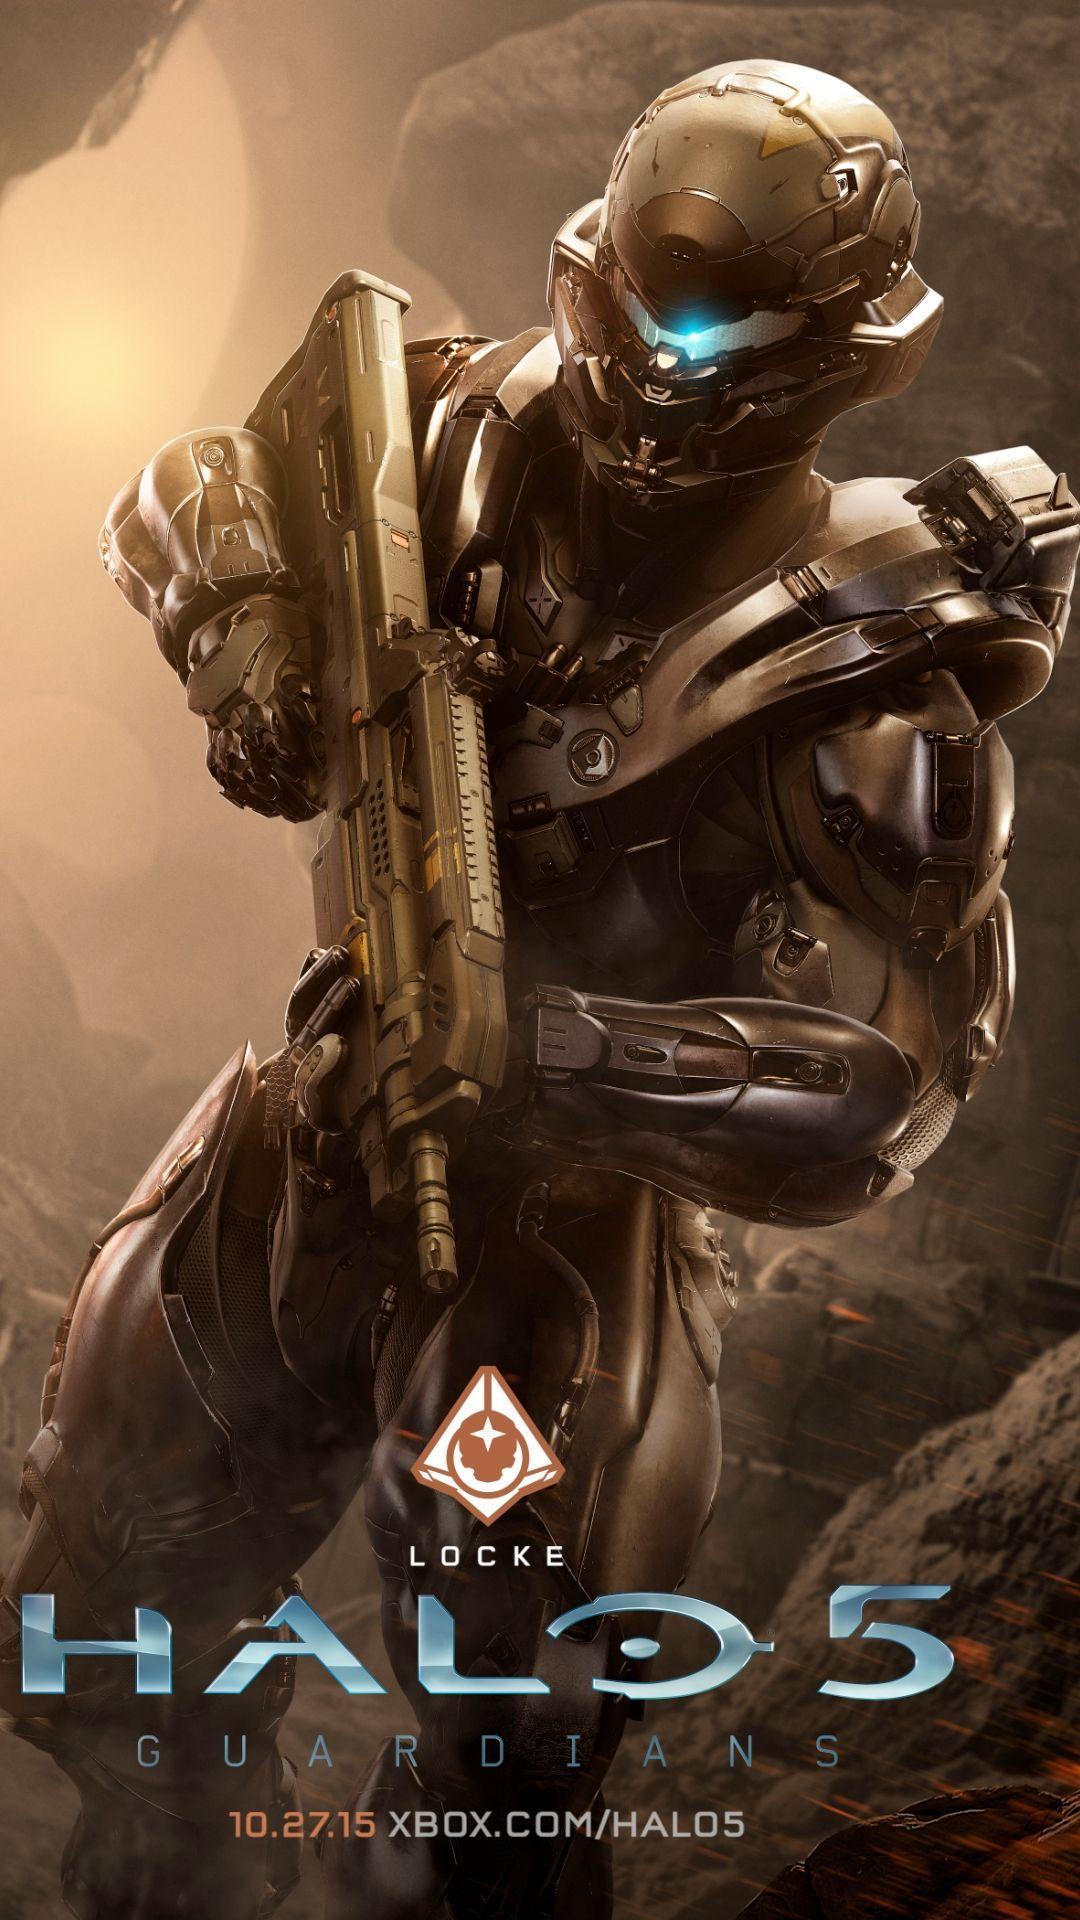 Locke Halo 5 Guardians Wallpaper